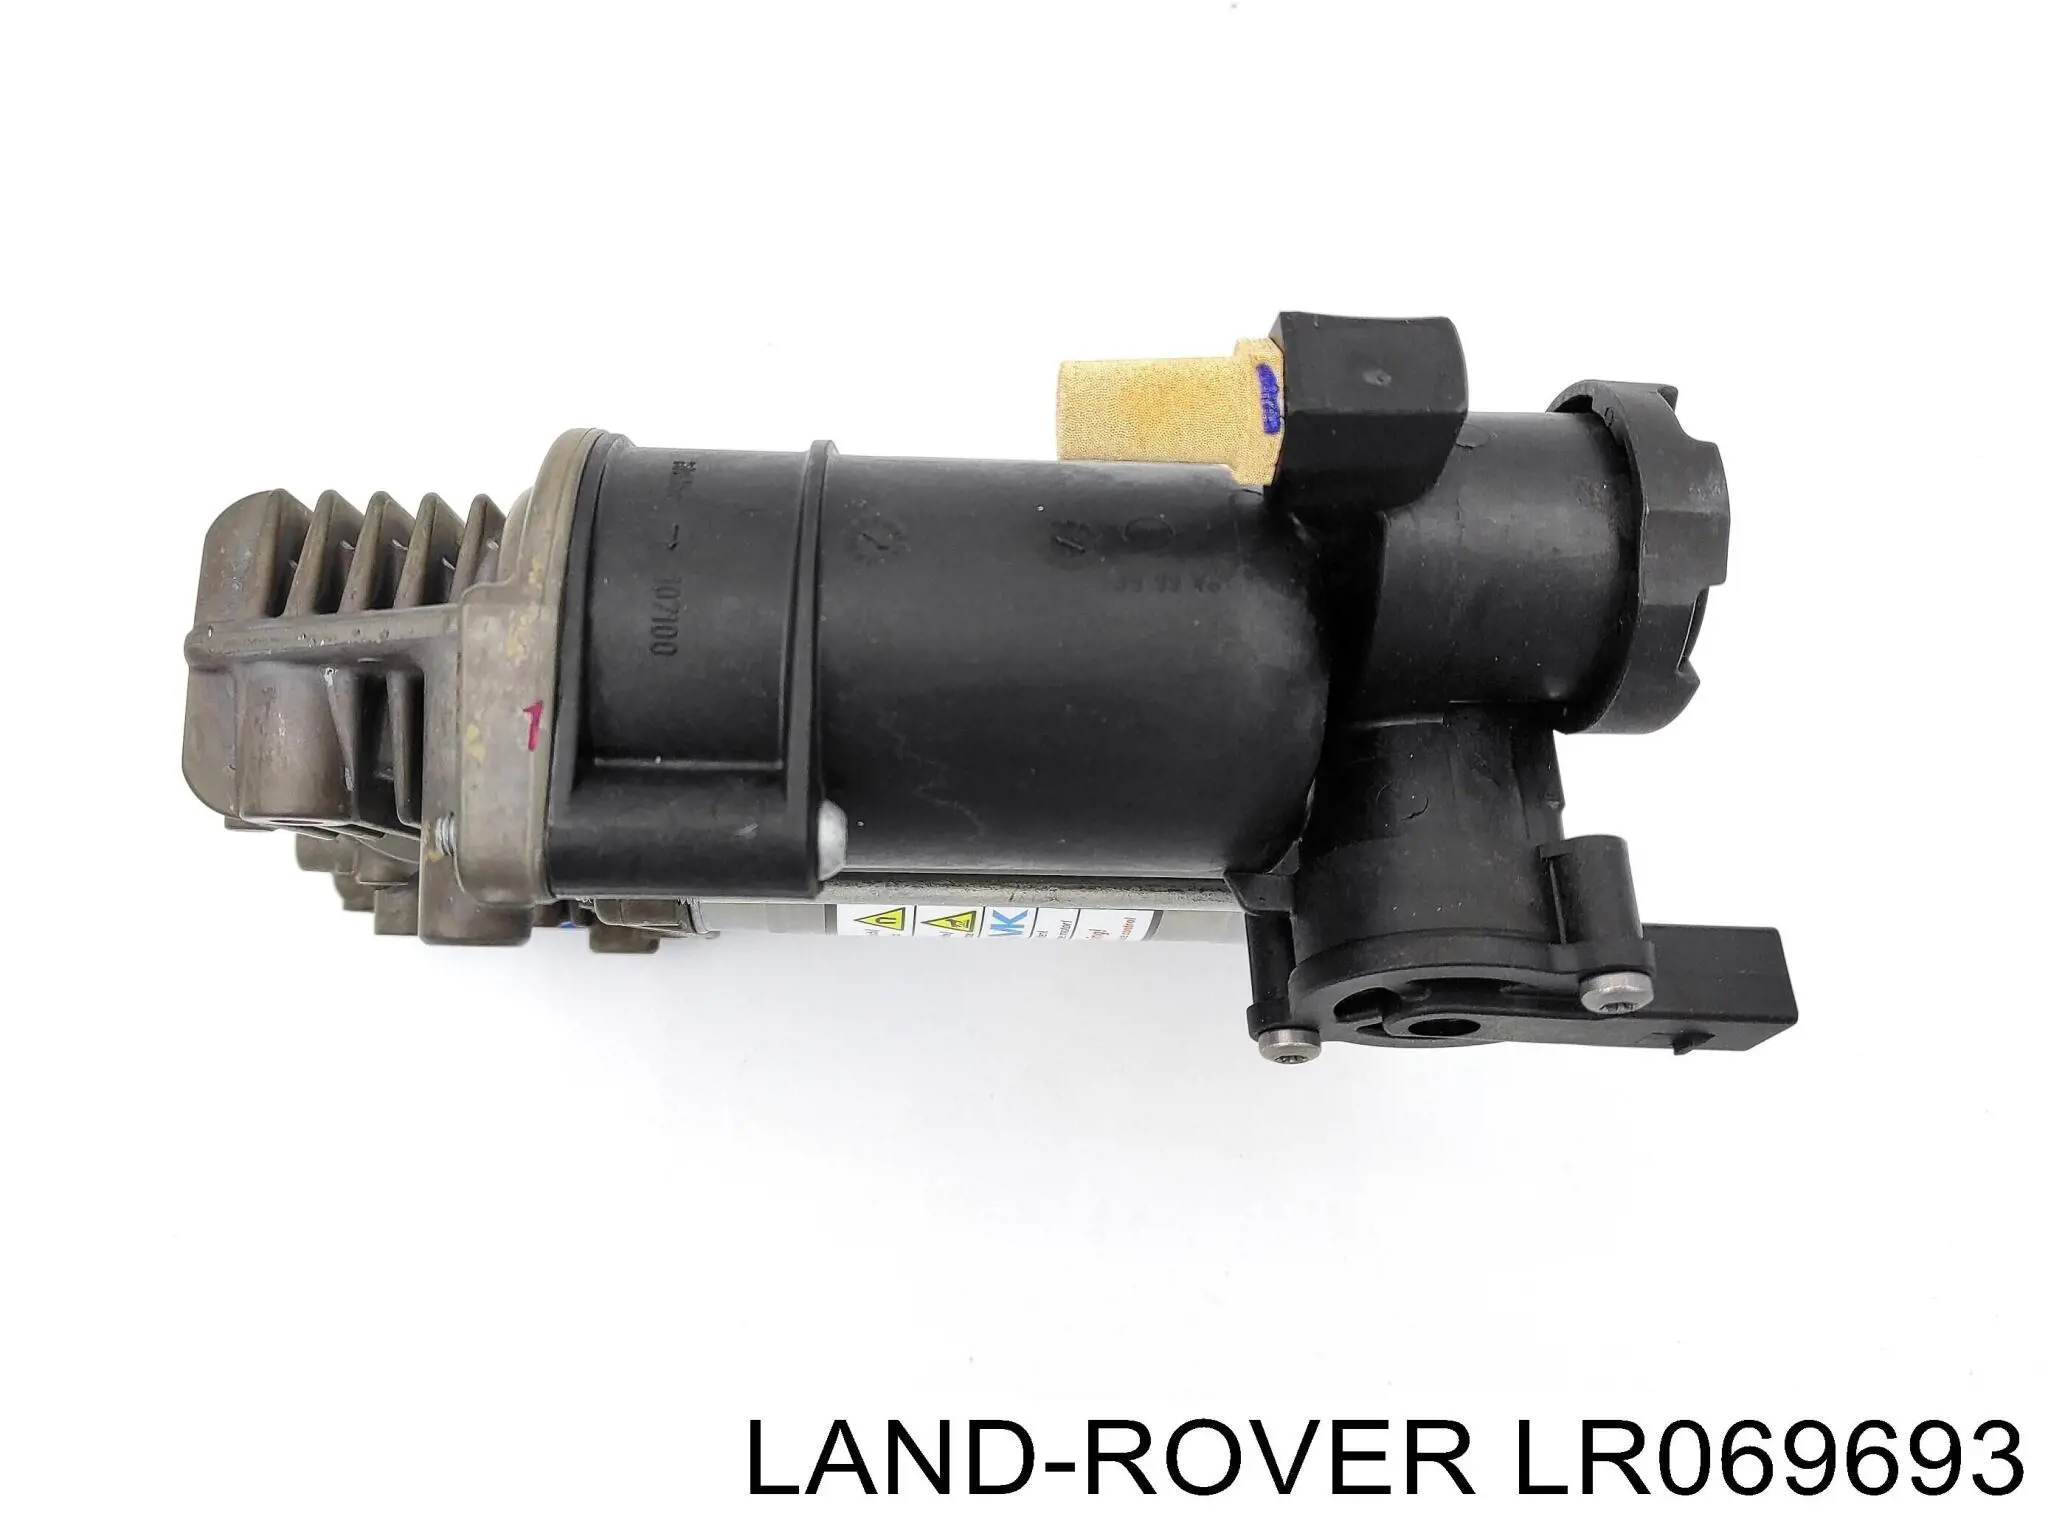 LR069693 Land Rover компрессор пневмоподкачки (амортизаторов)